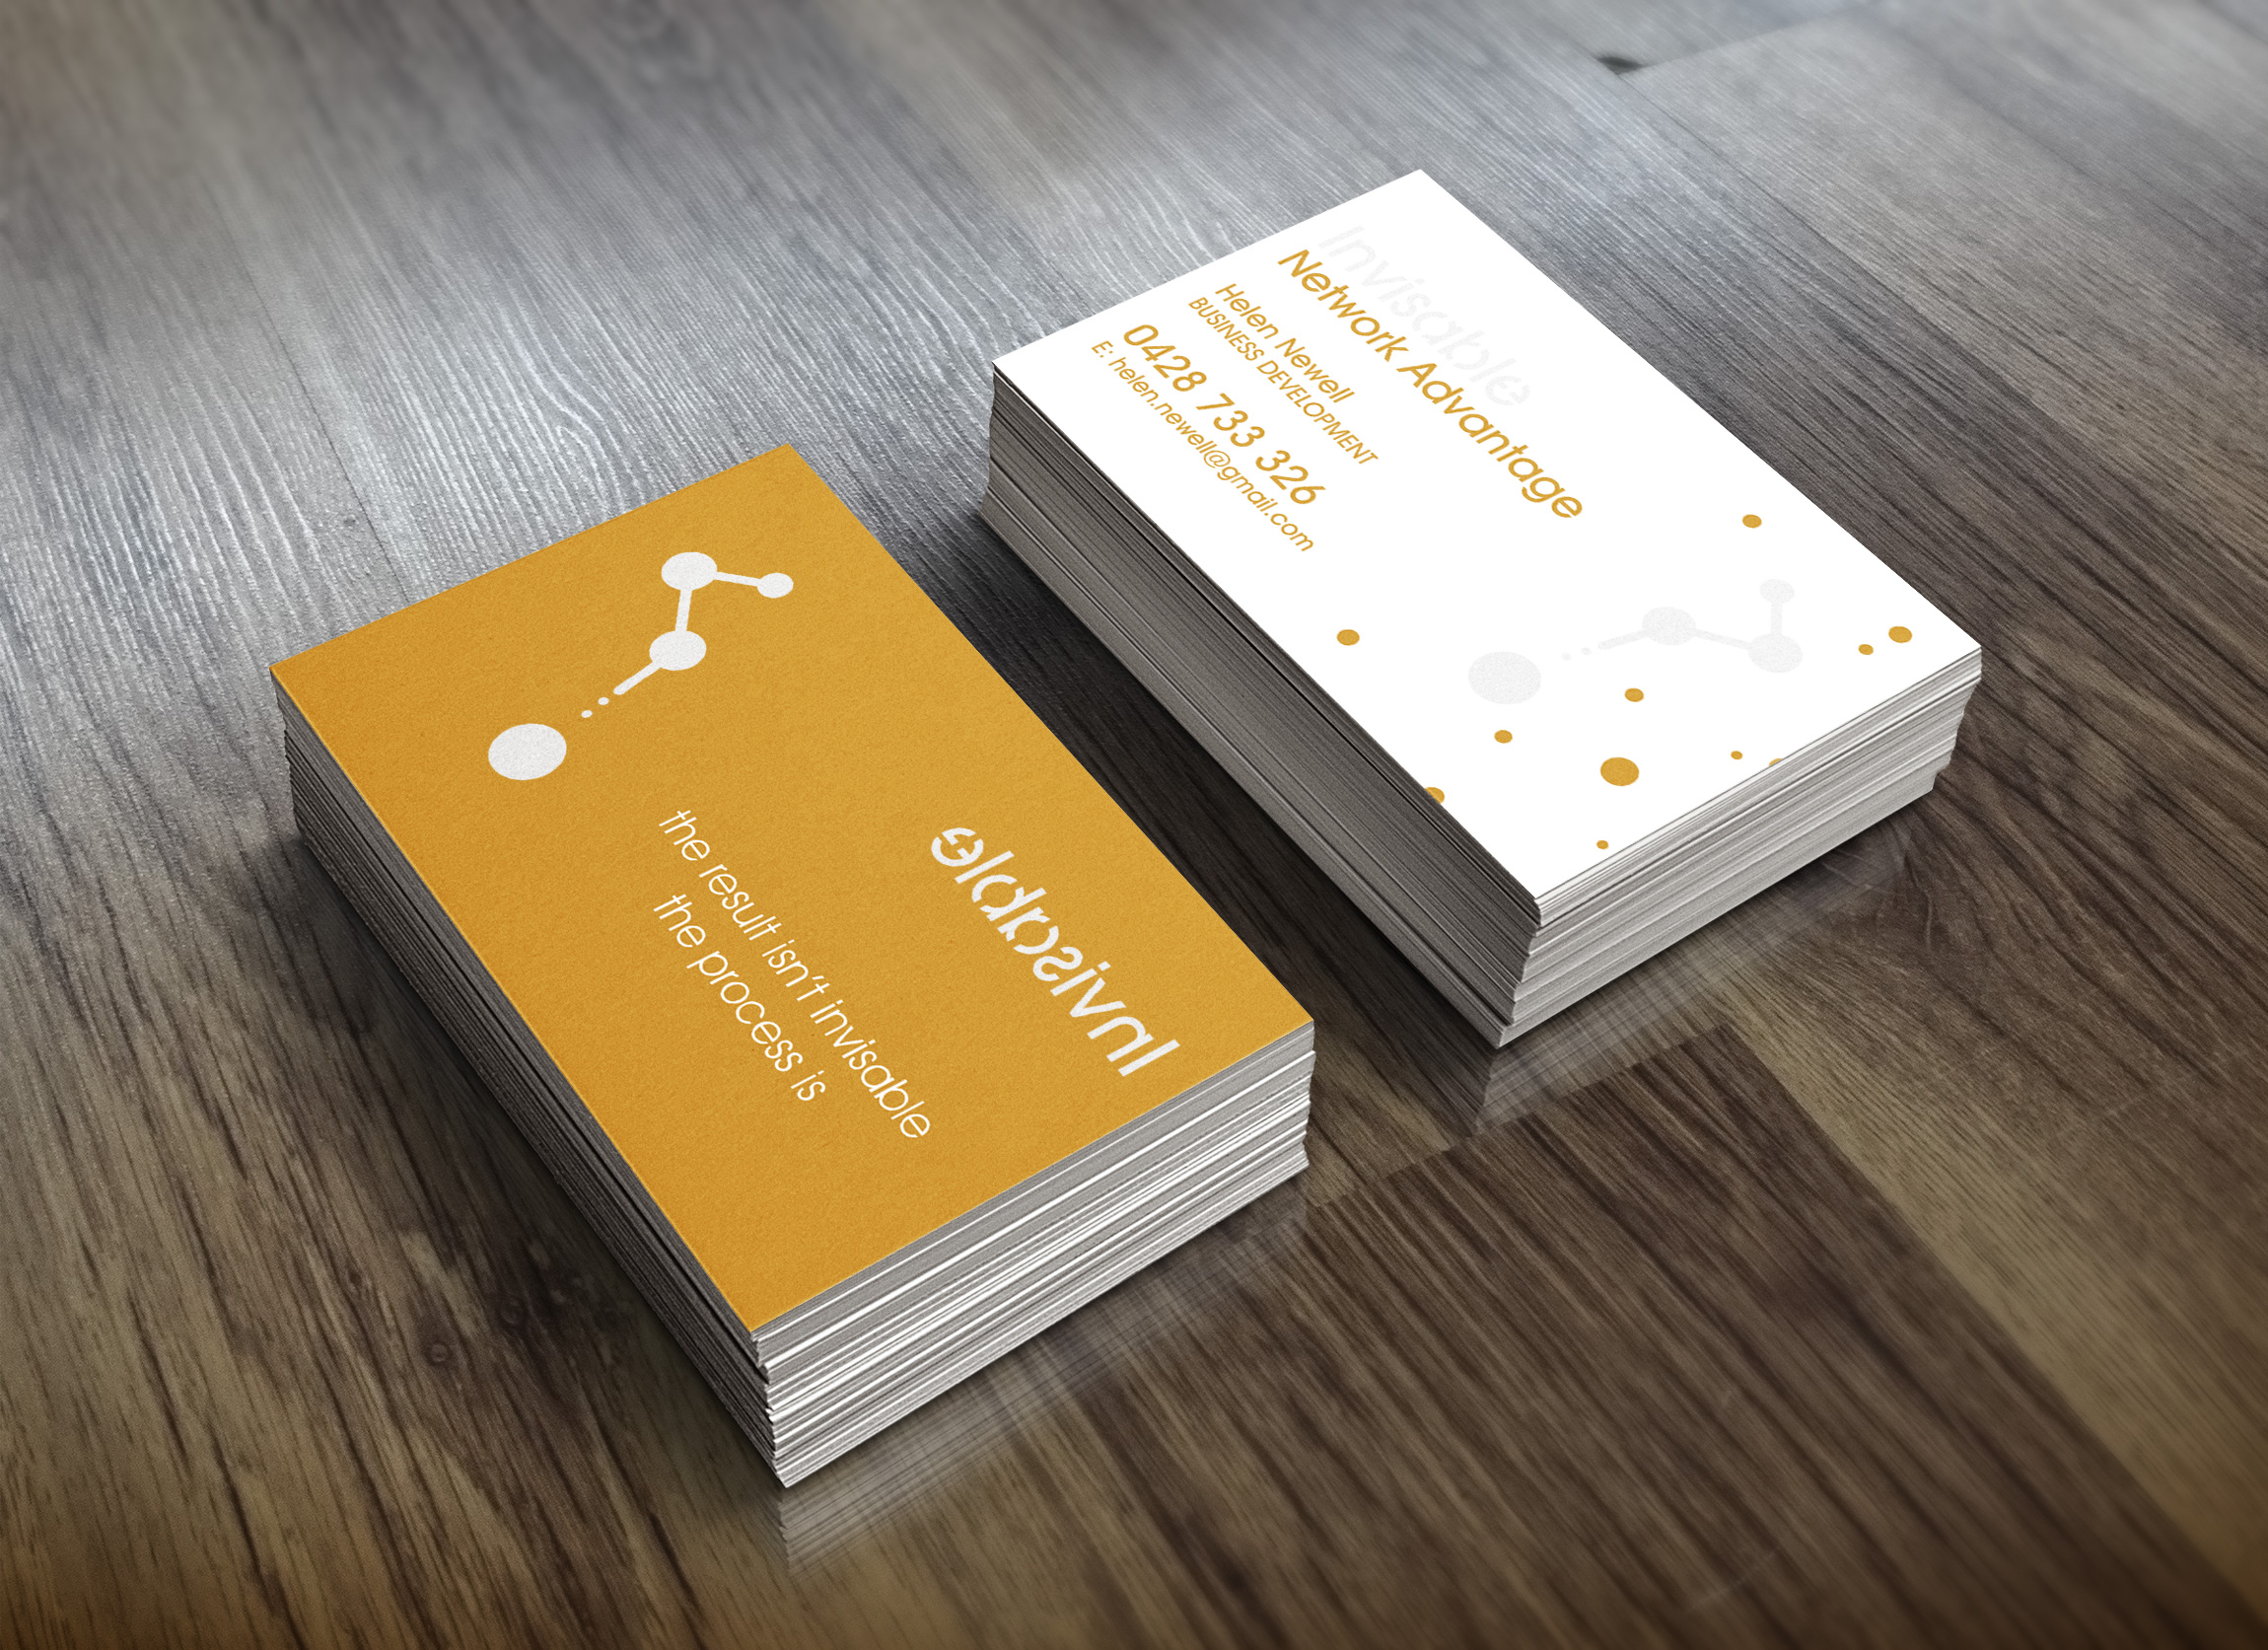 APAP Events Event Management and Graphic Design Rockhampton Invisable Network Advantage Business Cards